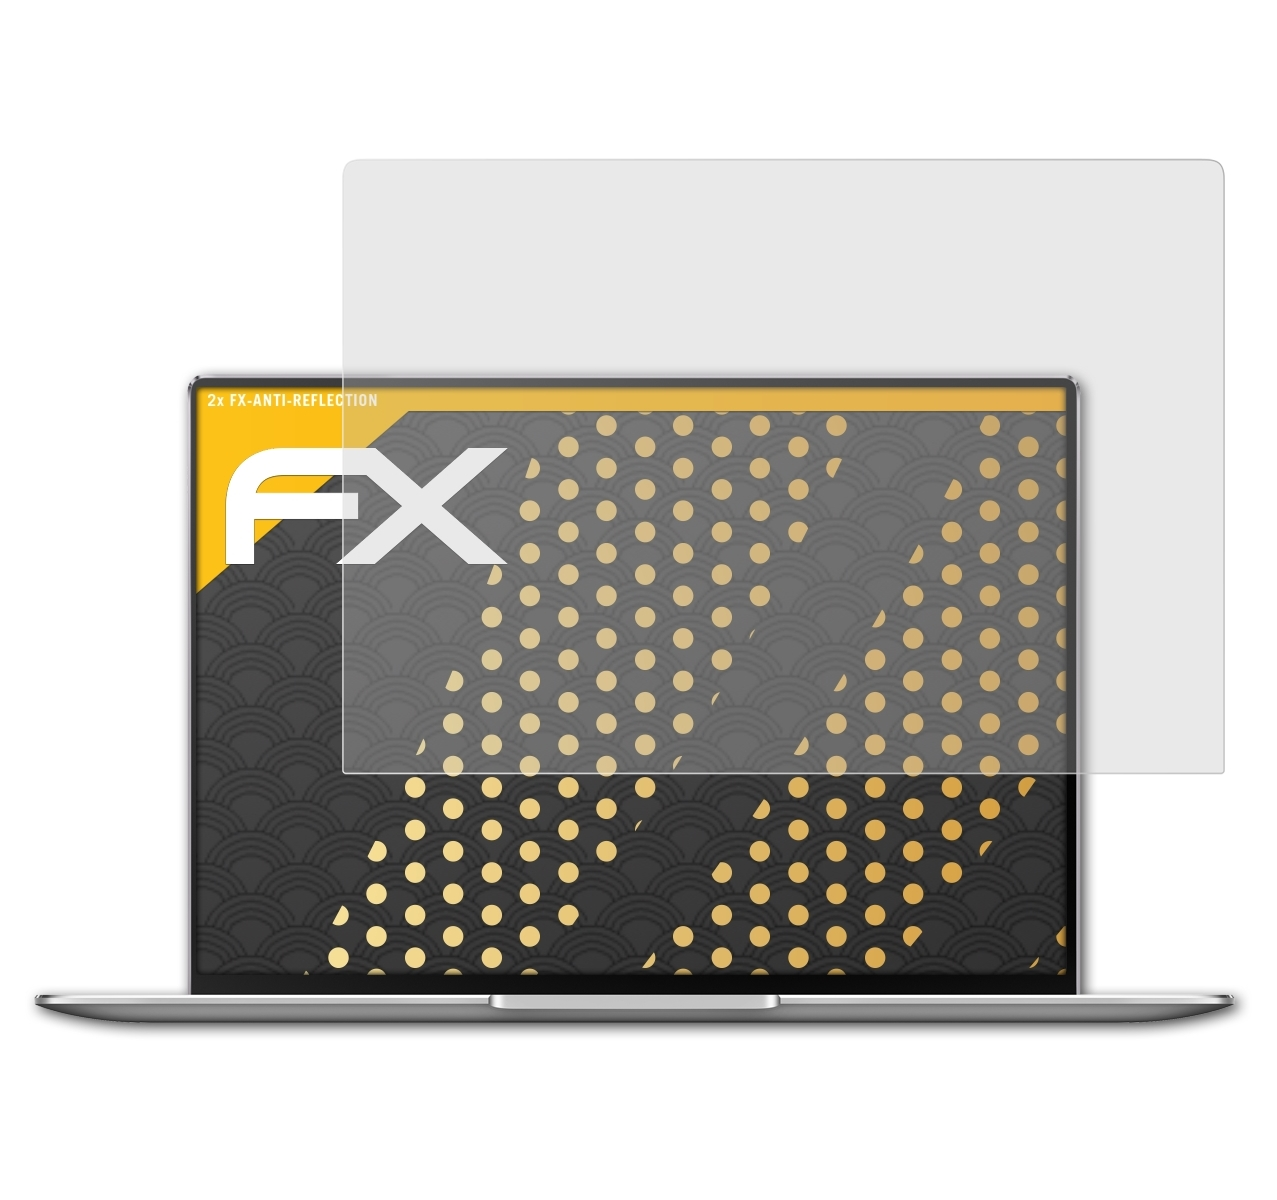 ATFOLIX 2x FX-Antireflex Pro Displayschutz(für MateBook Huawei X (2020))